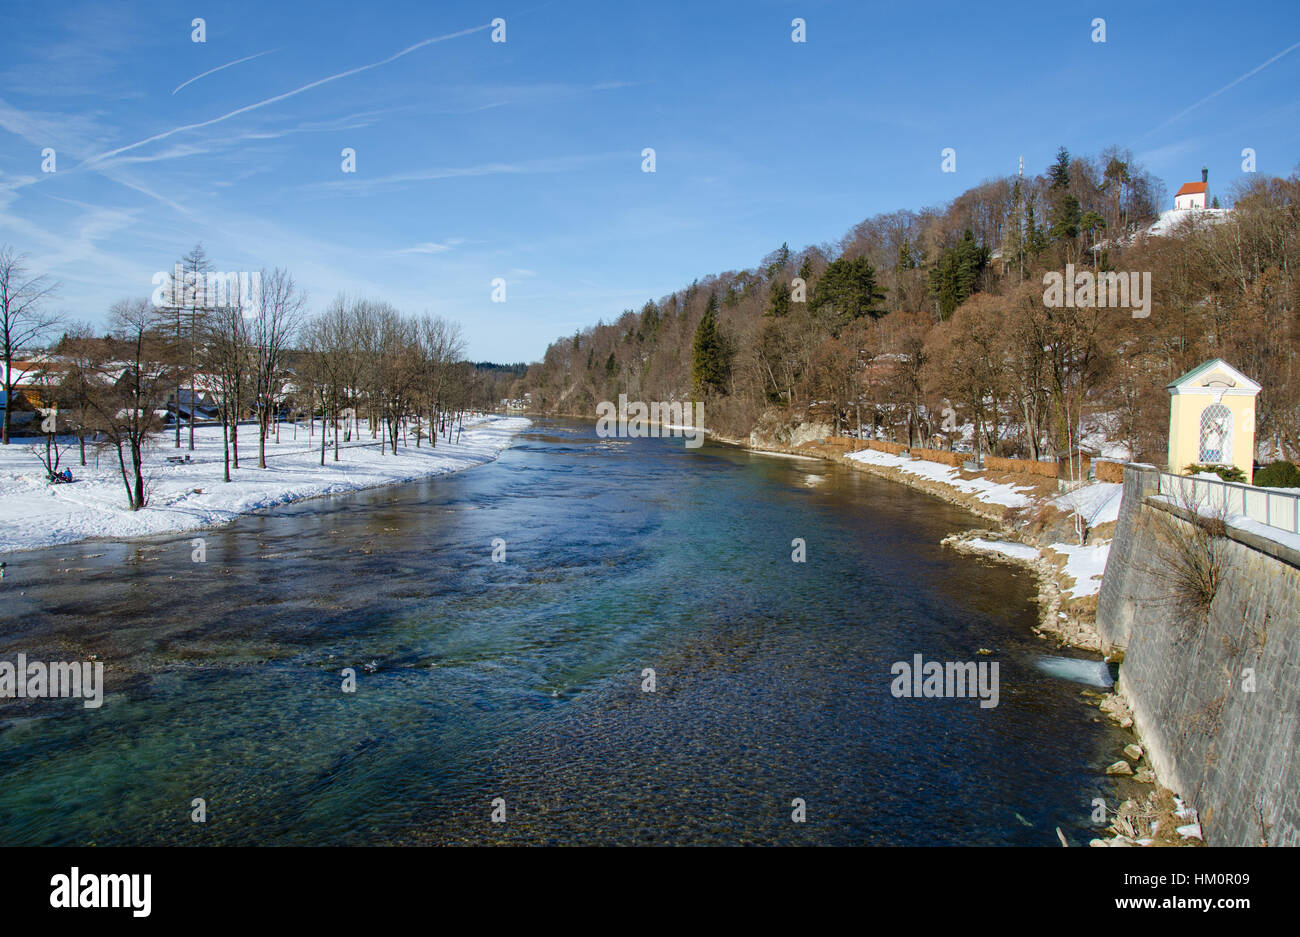 River Isar in Bad Tölz Stock Photo